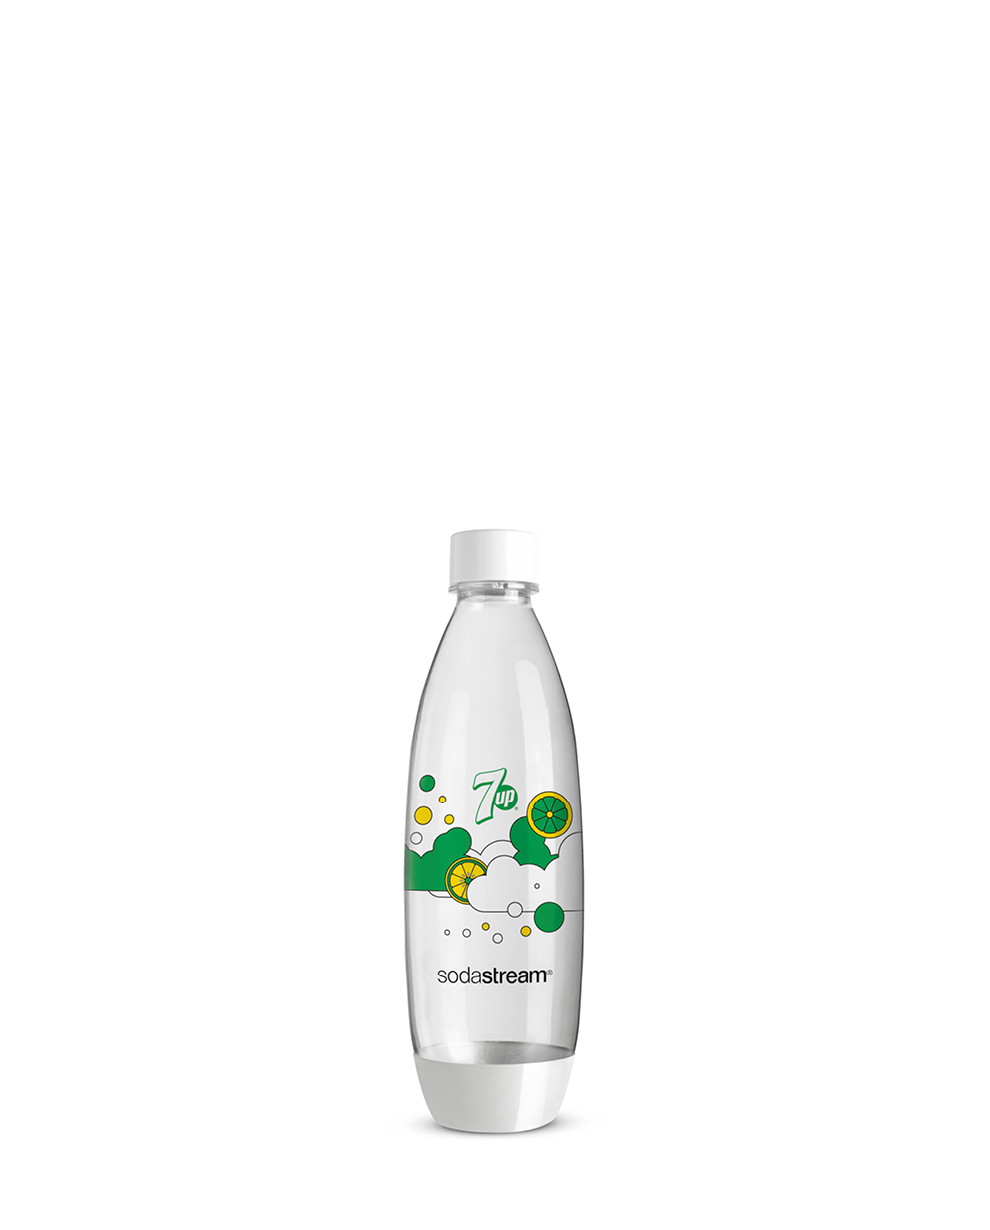 3 Bottiglie Fuse Pepsi PET 1 Litro riutilizzabili gasatore d'acqua  Sodastream, offerta vendita online